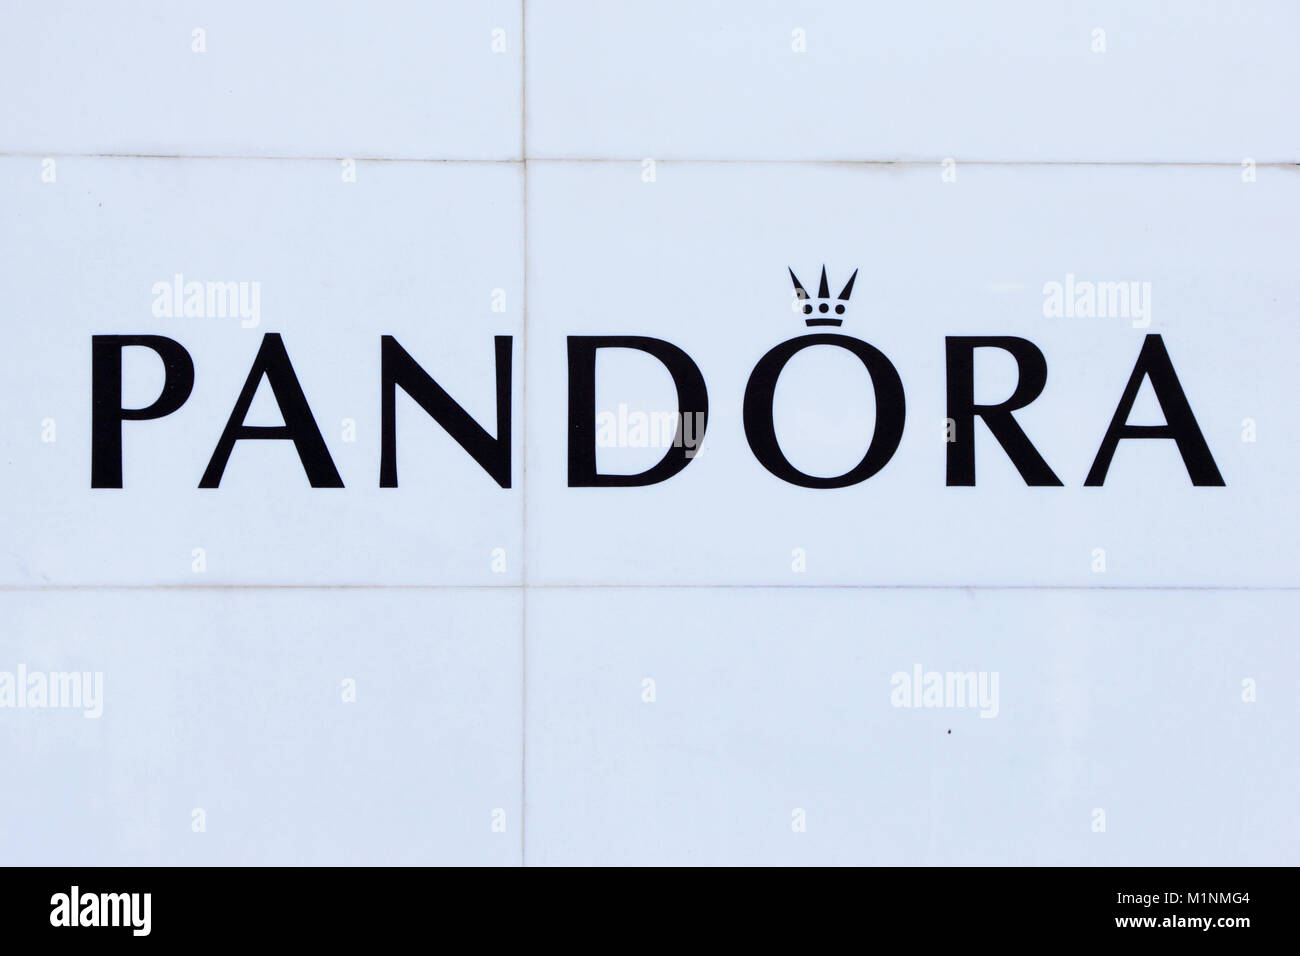 Pandora logo hi-res stock photography and images - Alamy